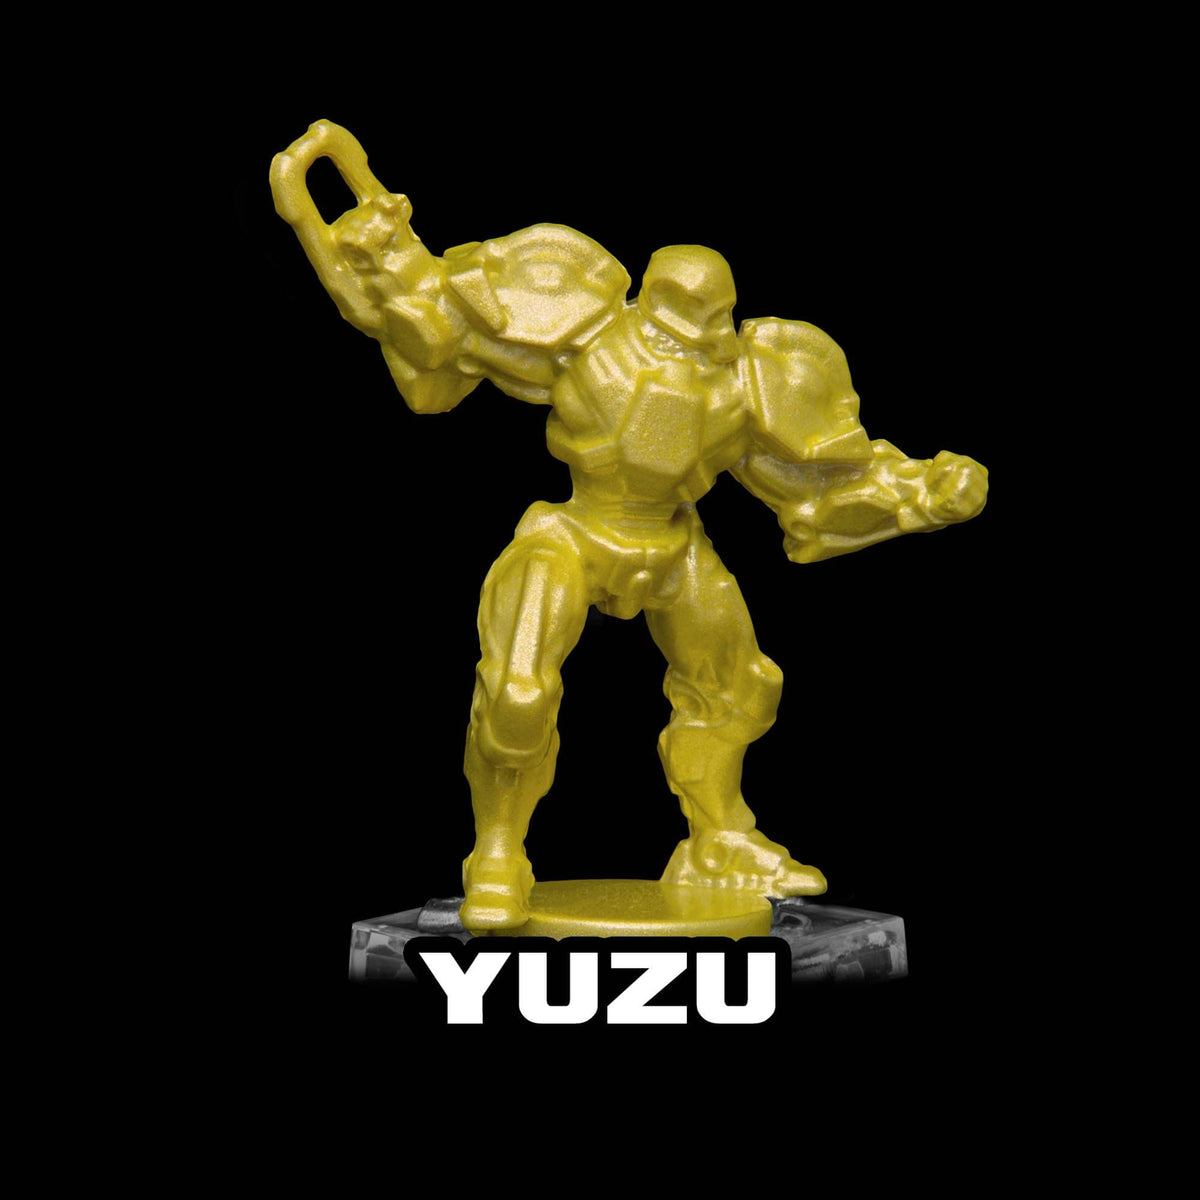 Yuzu Metallic Acrylic Paint Metallic Turbo Dork Exit 23 Games Yuzu Metallic Acrylic Paint